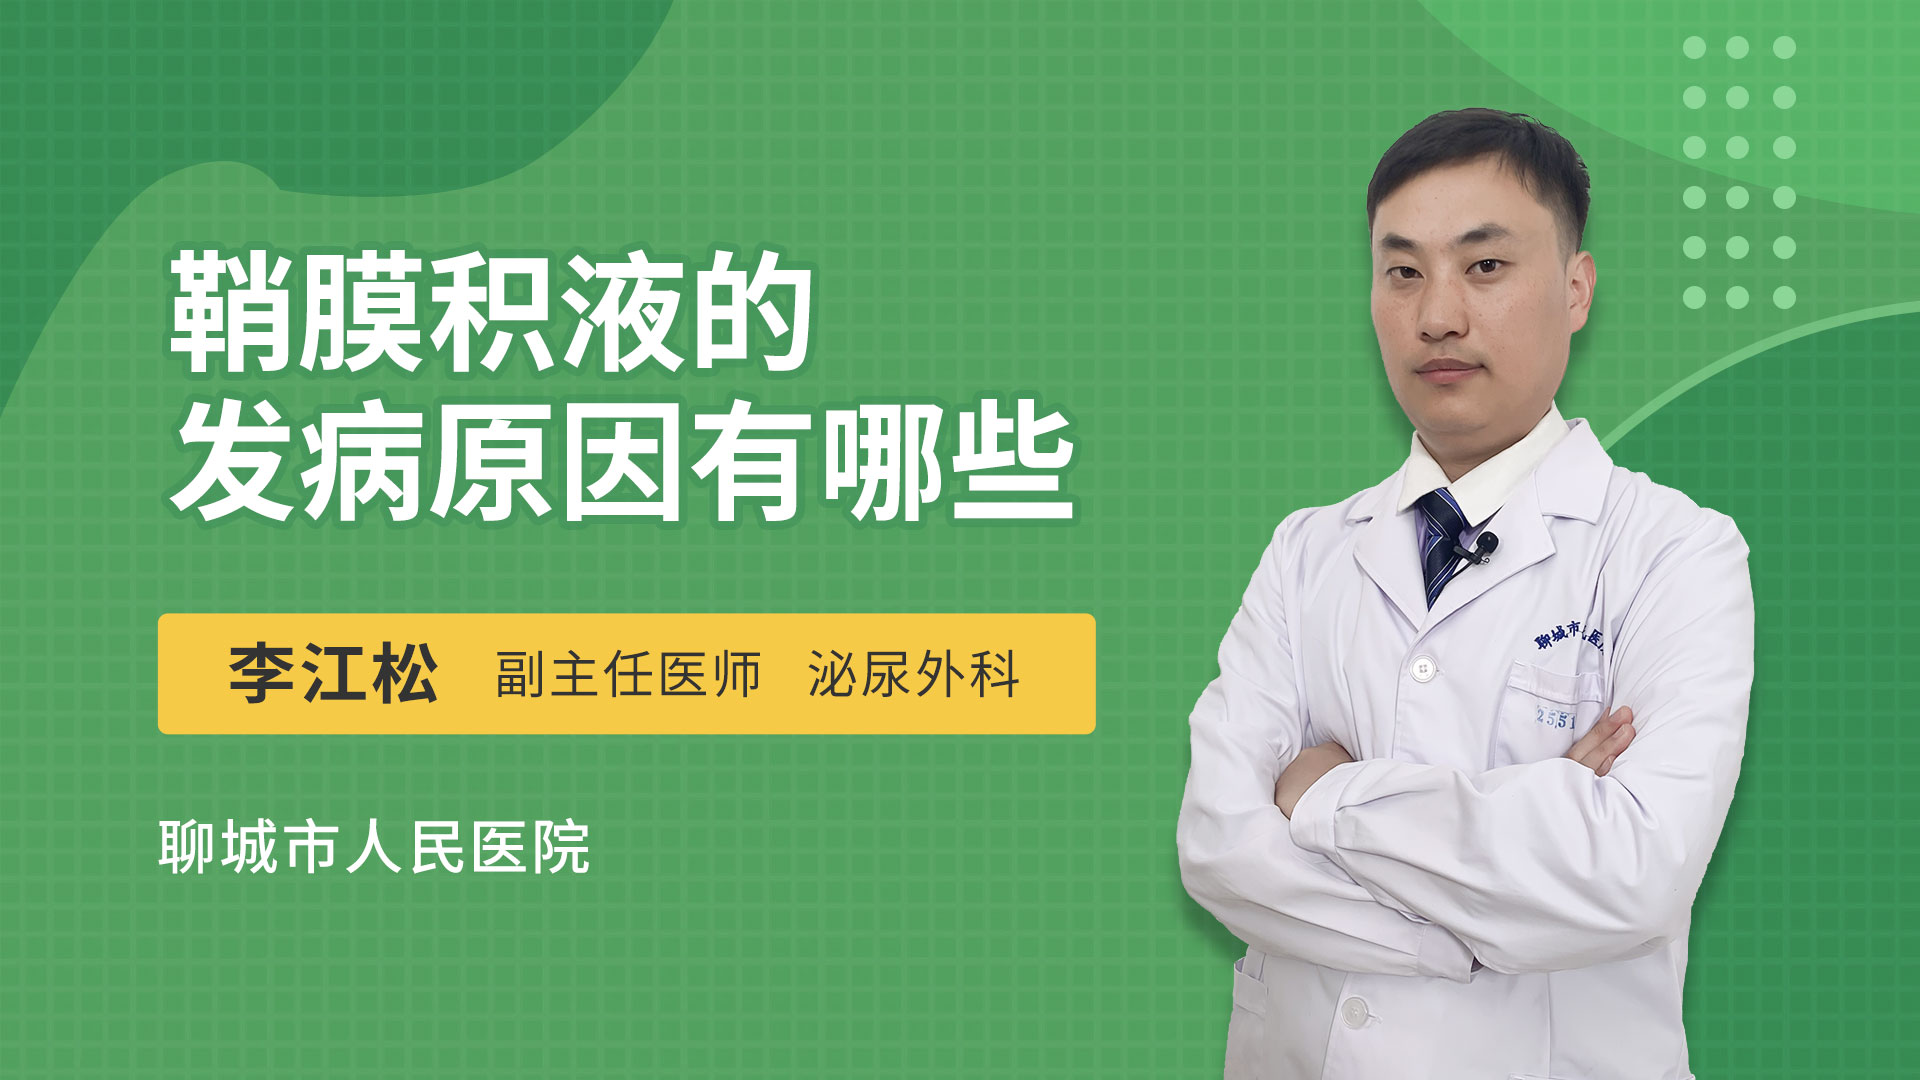 什么是阴囊湿疹_刘文斌医生视频讲解皮肤科疾病-快速问医生